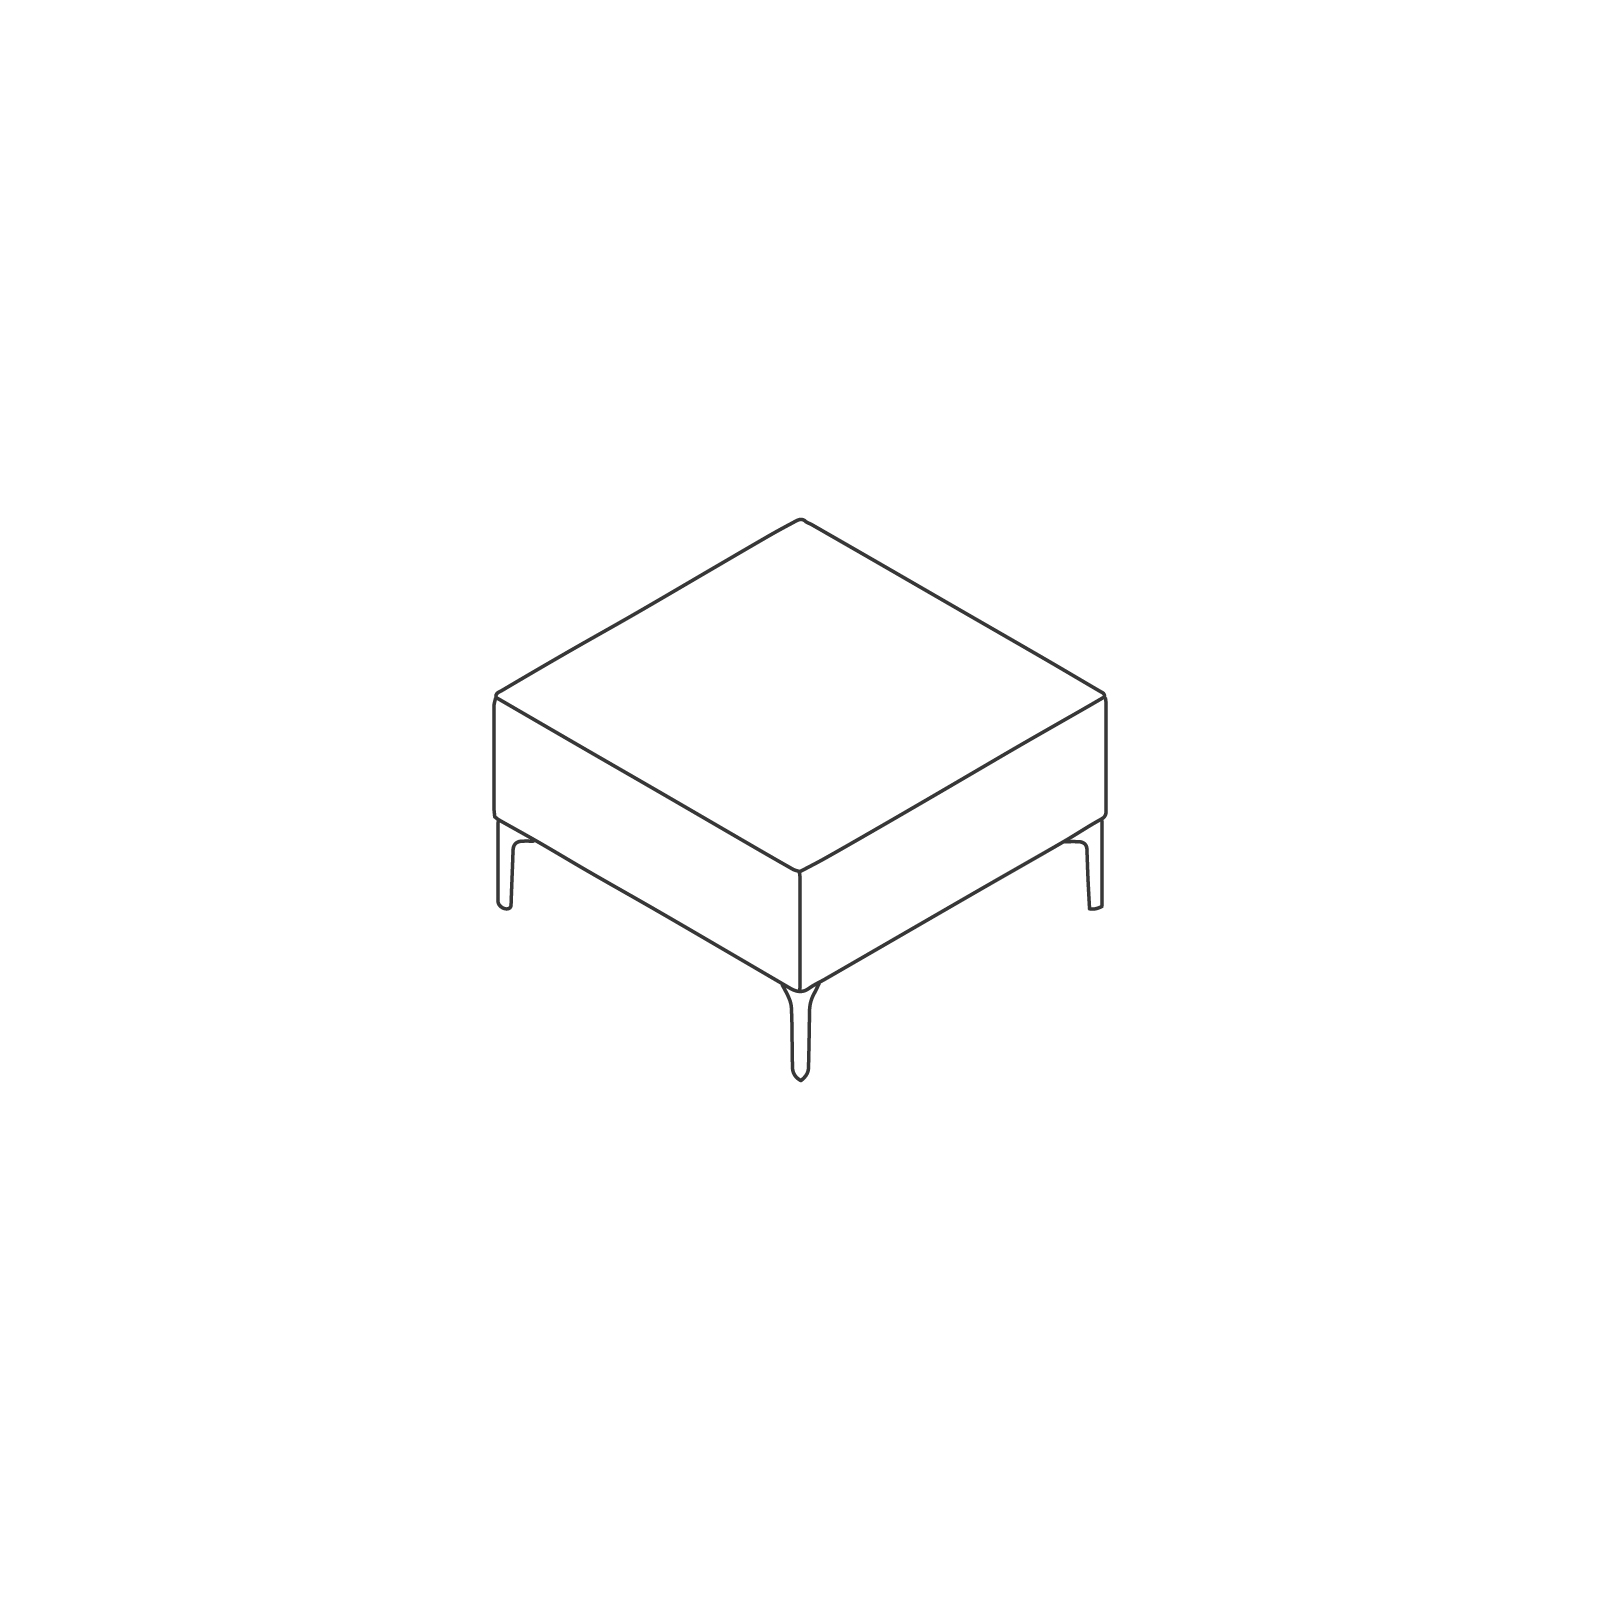 Dessin au trait : Siège modulaire Symbol – Siège haut individuel